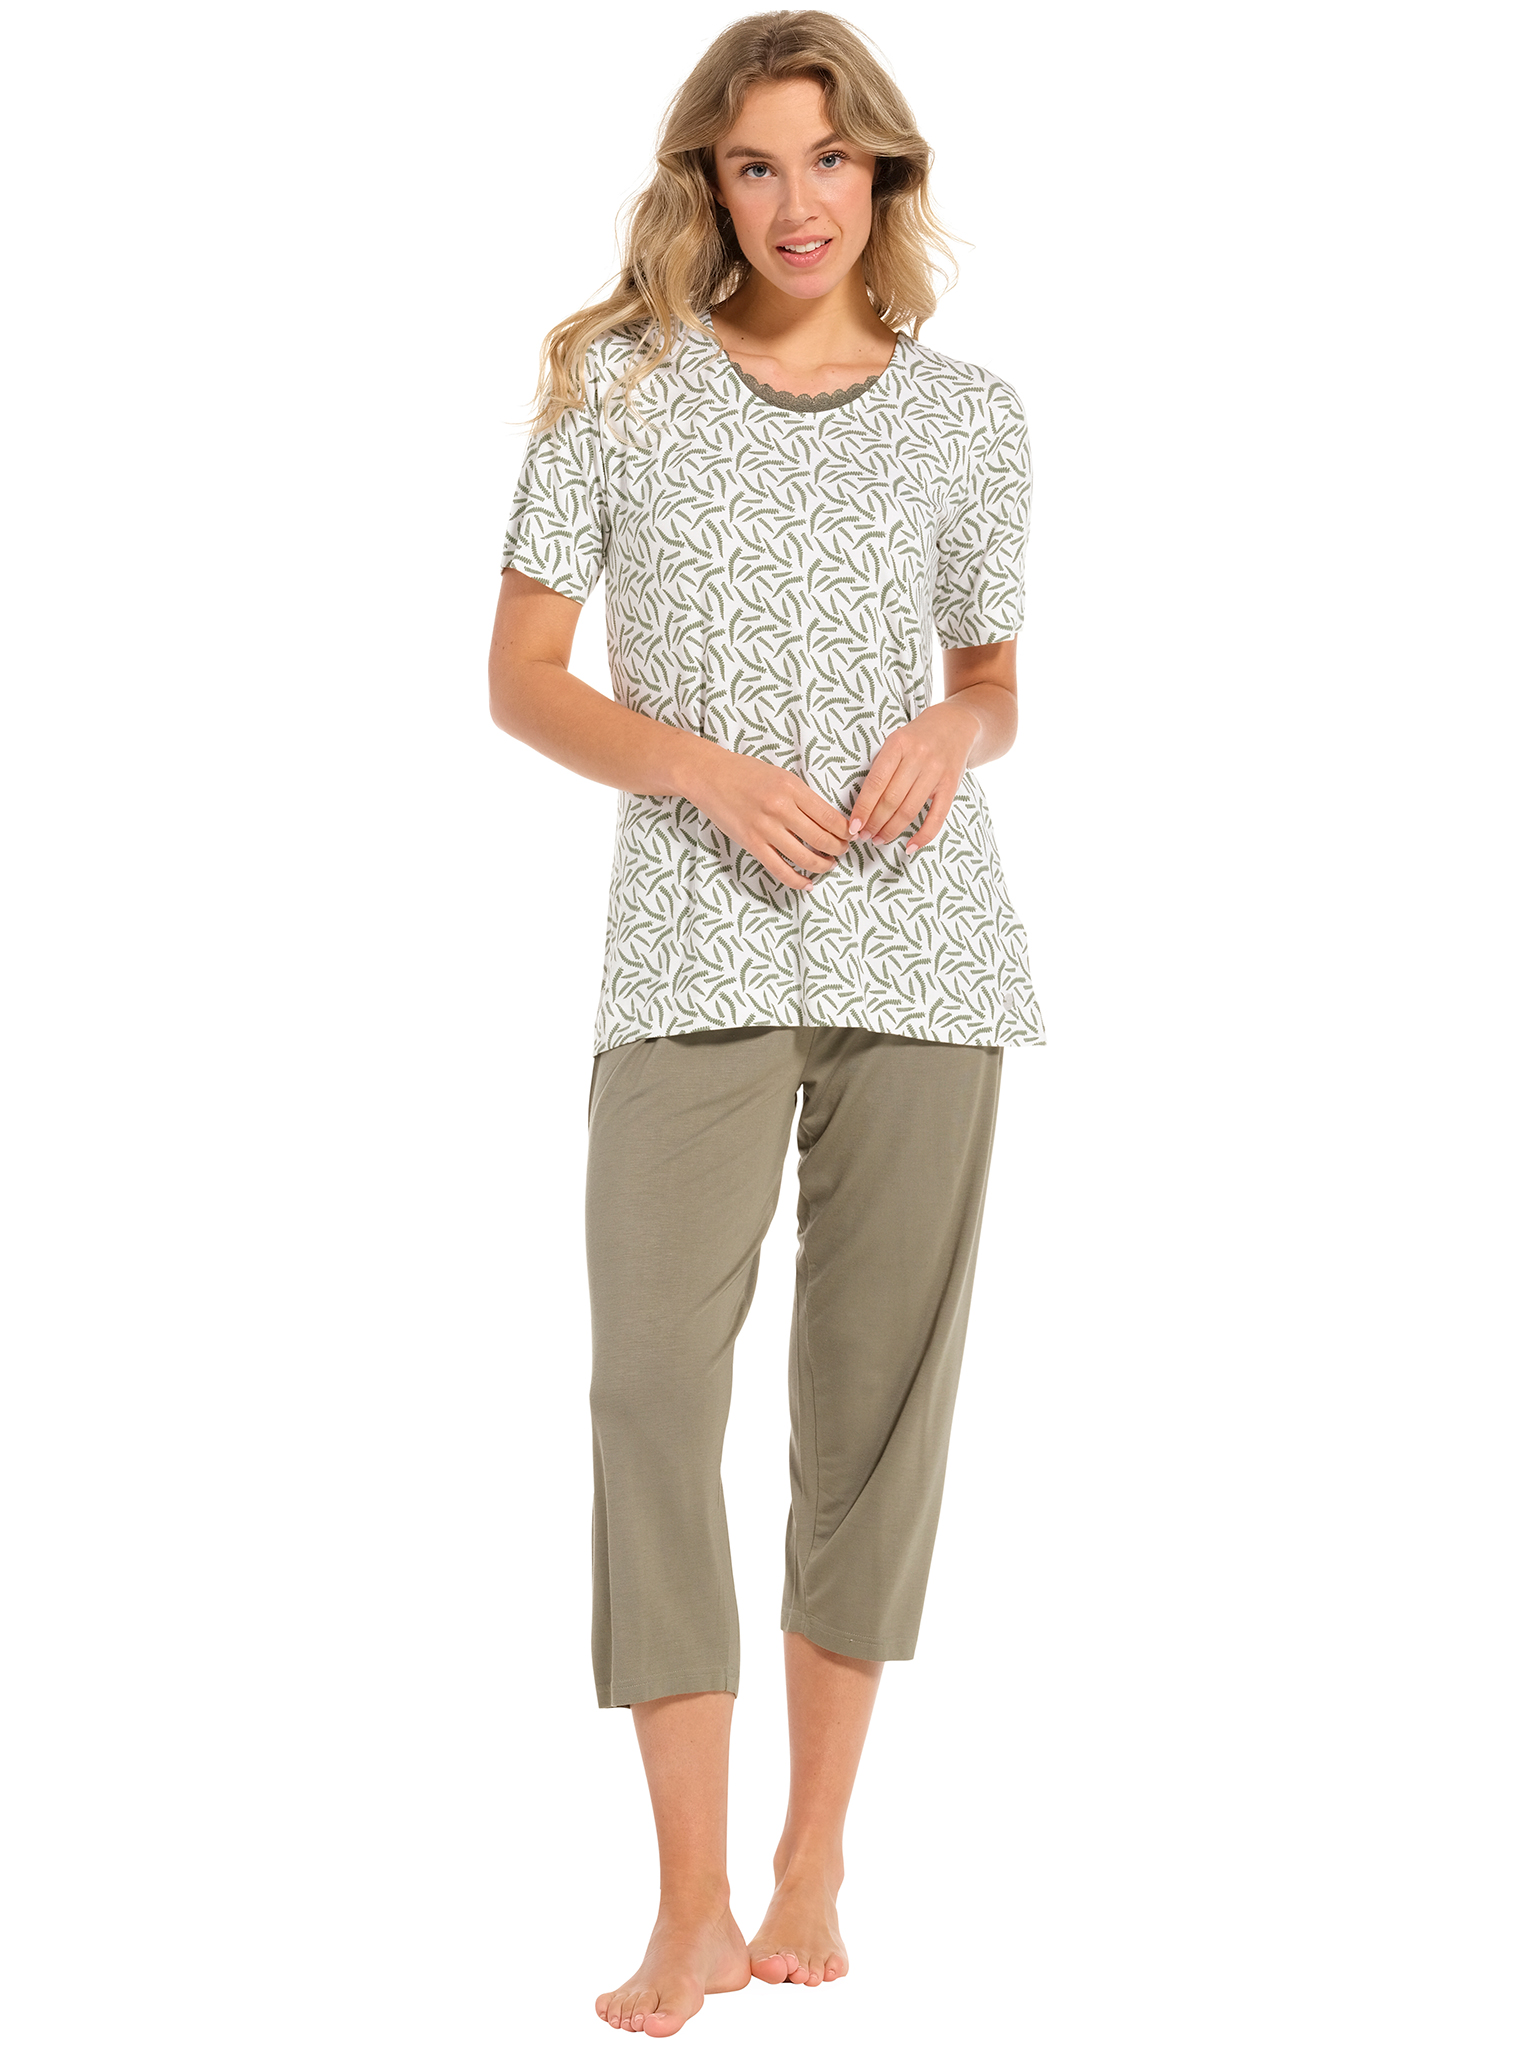 Pastunette pyjama dames - wit/donkergroen met print - 20241-148-2/720 - maat 42